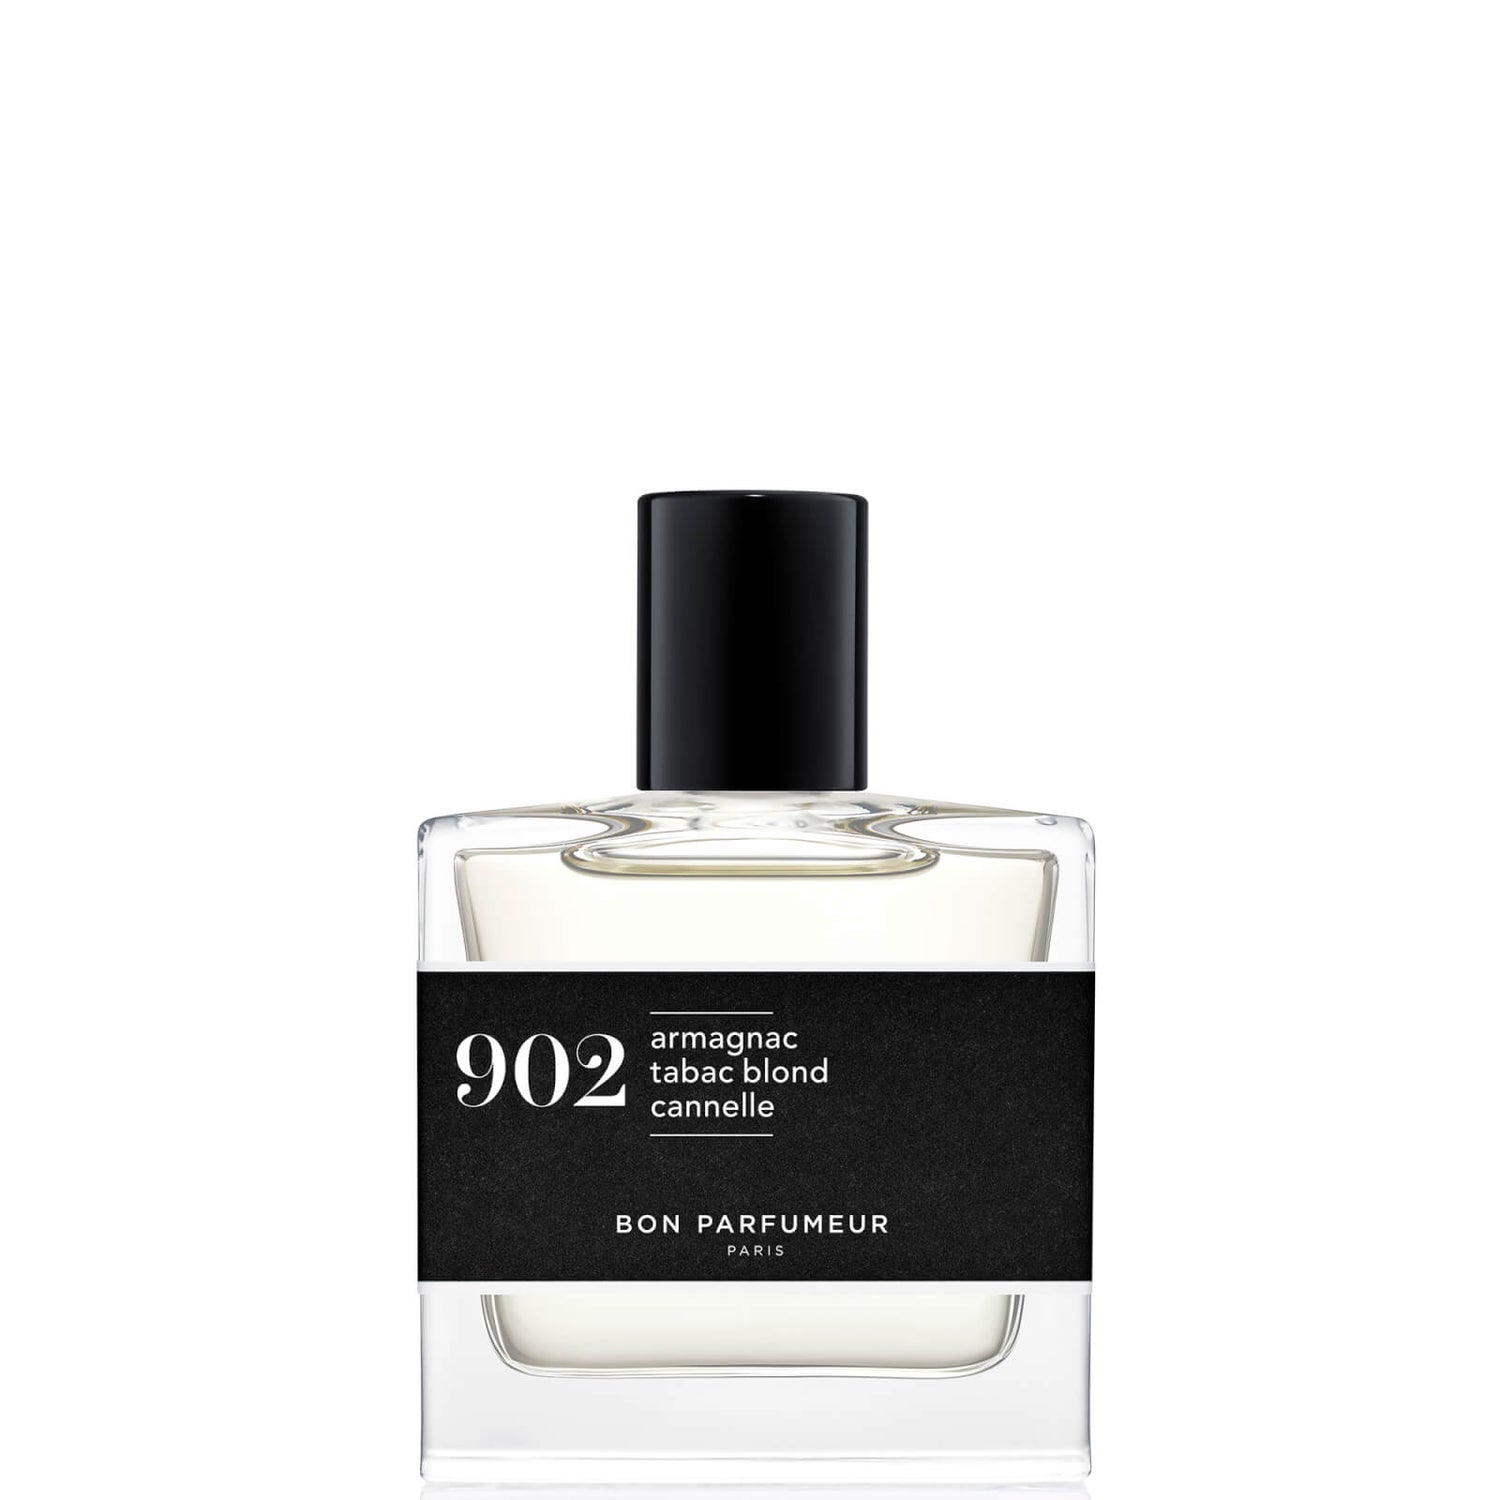 Bon Parfumeur 902 Armagnac Blond Tobacco Scorțișoară Apă de parfum - 30ml